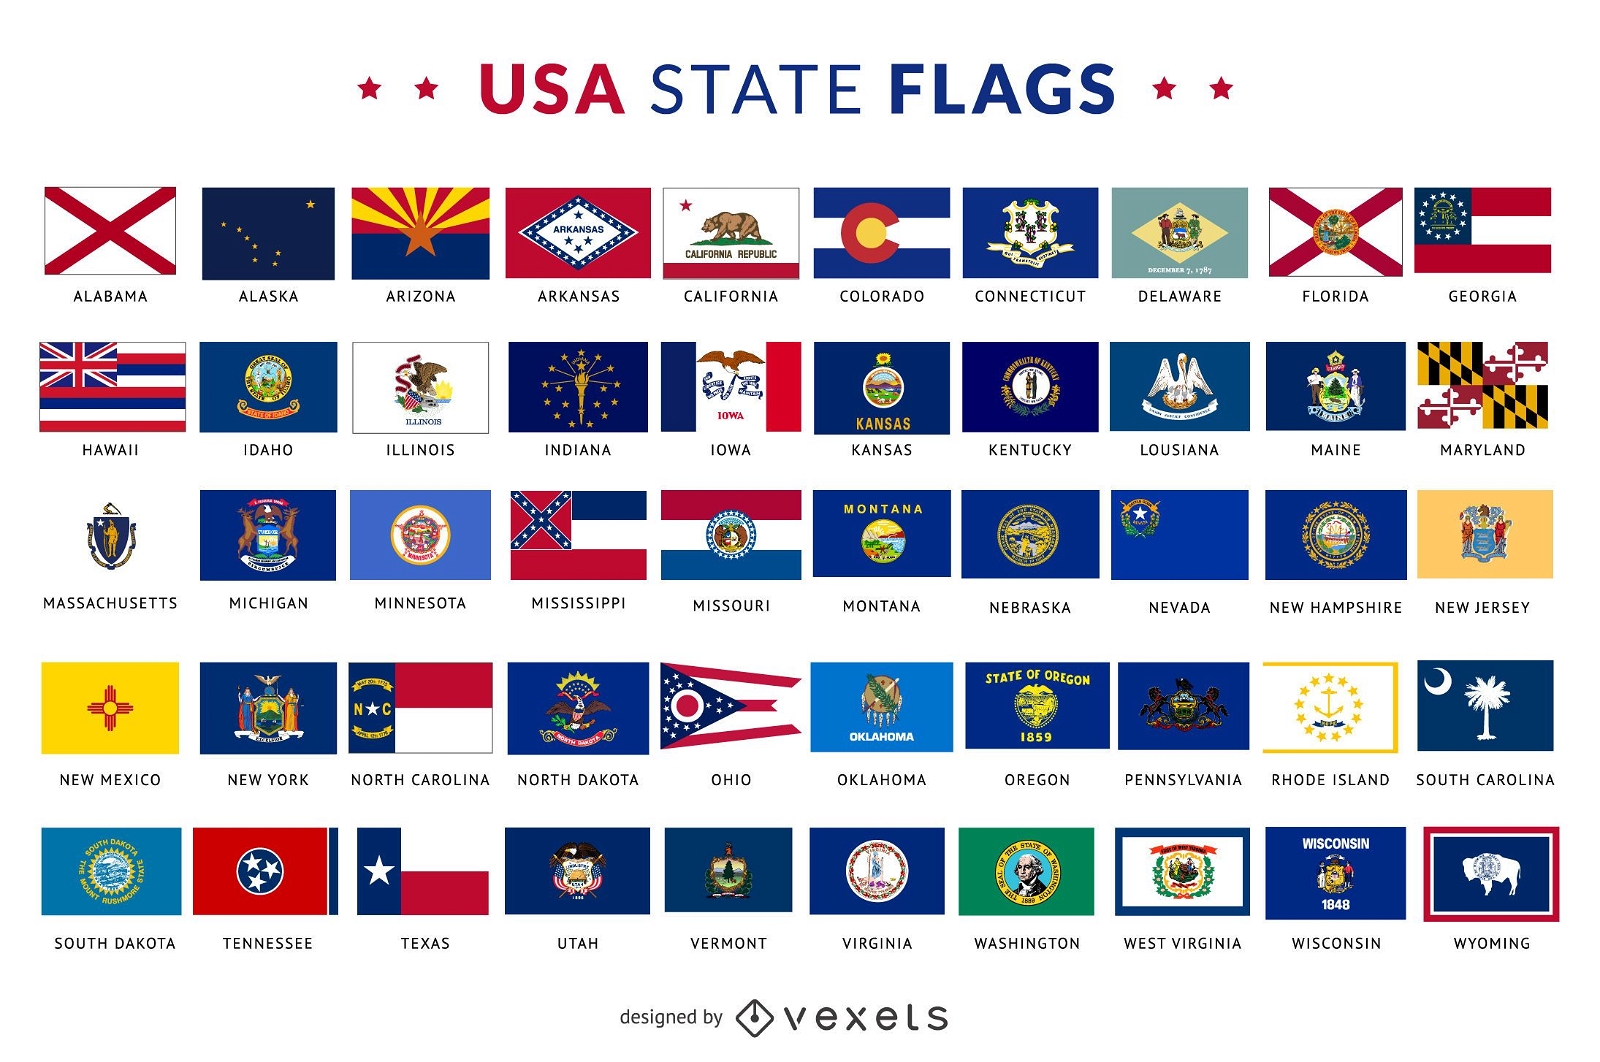 Сколько штатов на флаге. Флаги Штатов США. Флаги Штатов США И их названия. Гербы Штатов США. Флаги Штатов США таблица.